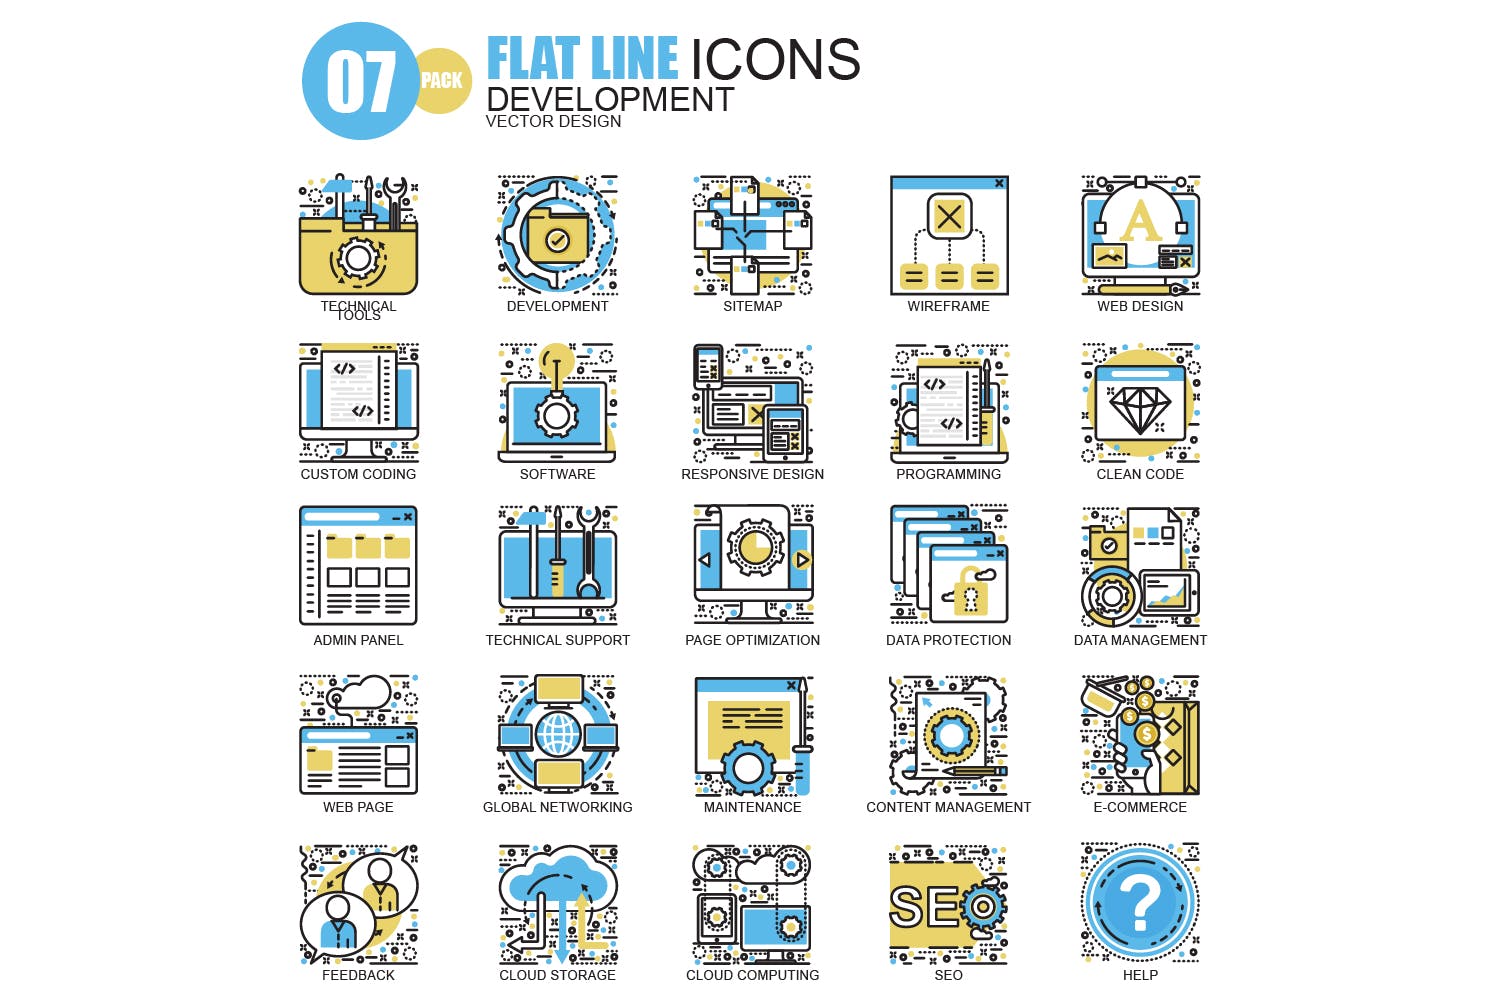 150枚概念主题扁平设计风格矢量线性图标 Line icons插图(1)